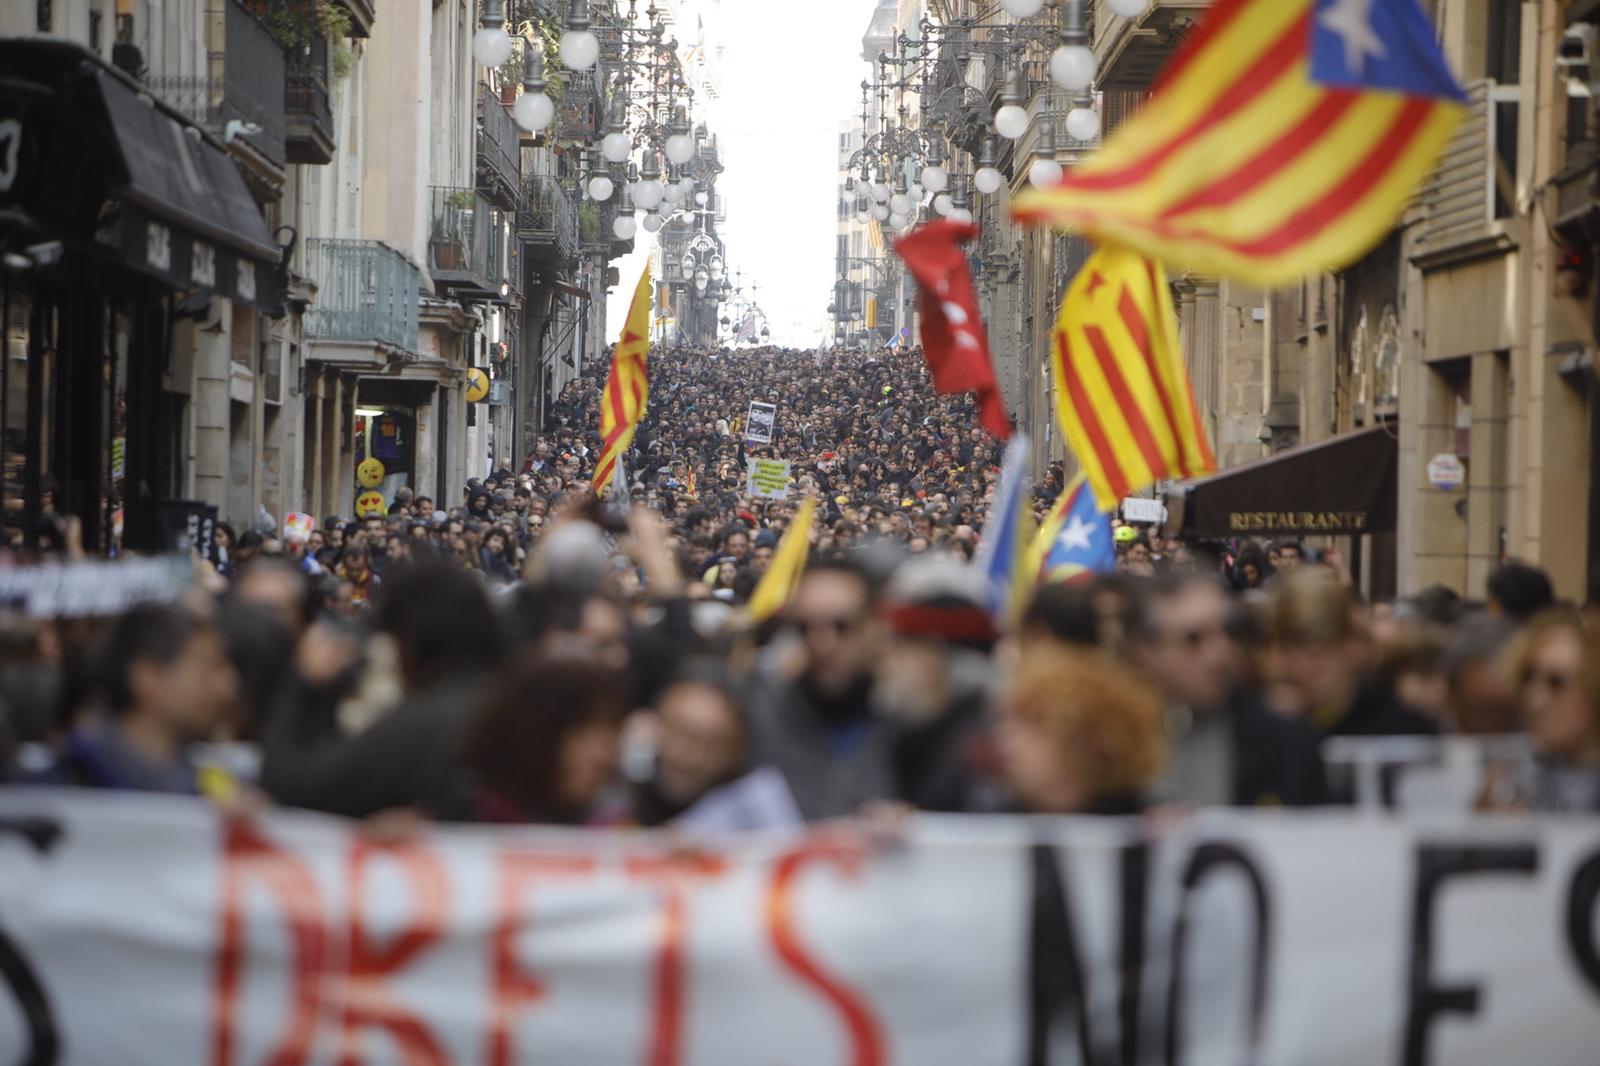 New platform 'Ens Plantem' plans bold, non-violent action to unblock Catalan issue